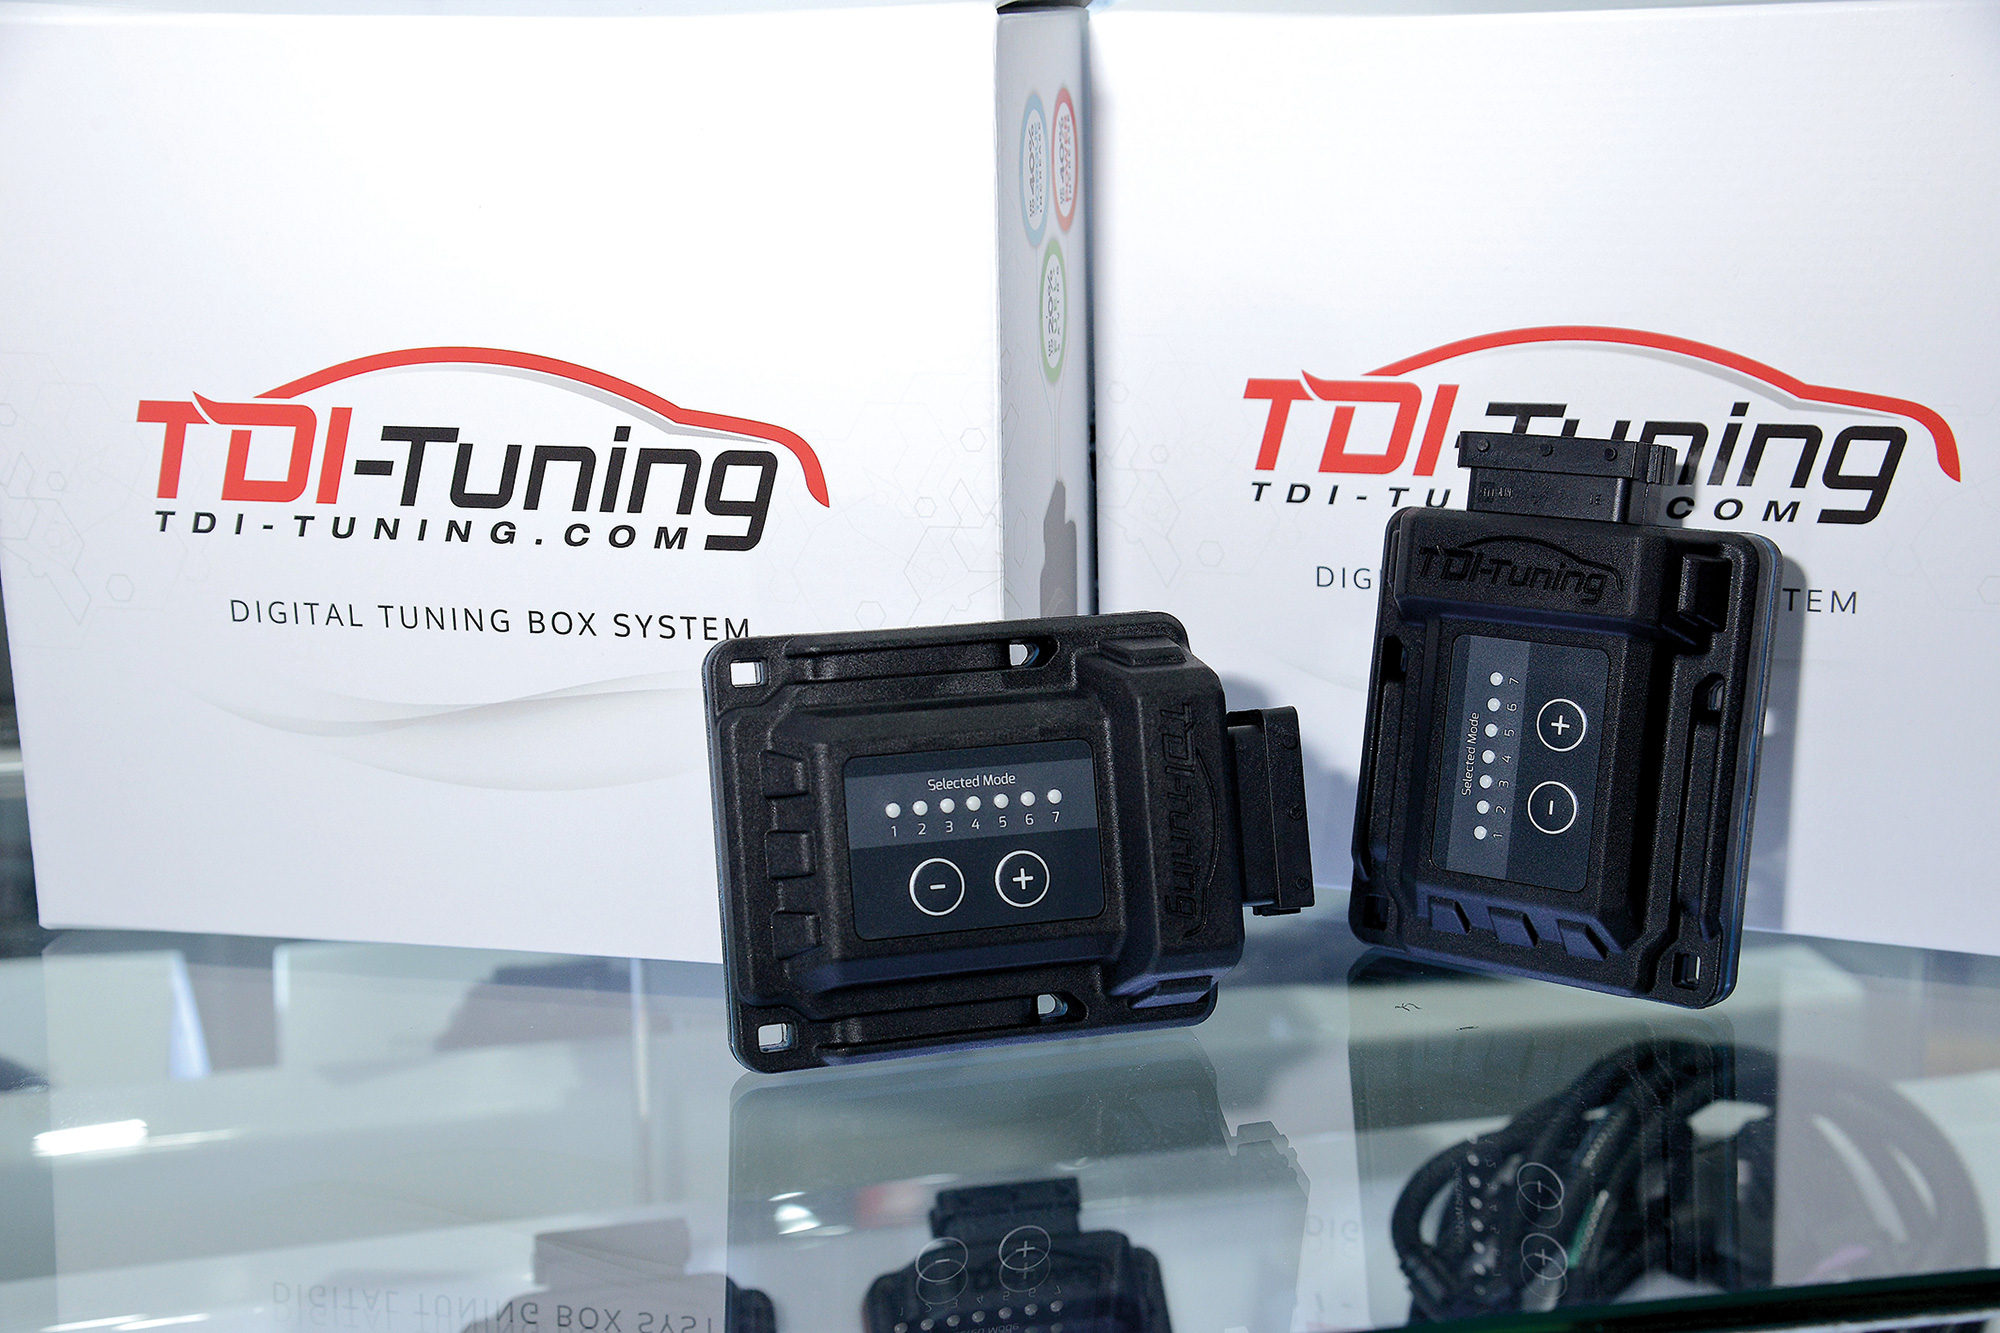 กล่องแต่งเพิ่มประสิทธิภาพรถยนต์ TDI-TUNING รุ่น CRTD 4 บริษัท เอส เค บี ทอป จูนนิ่ง จำกัด โทร. 09-3569-4156